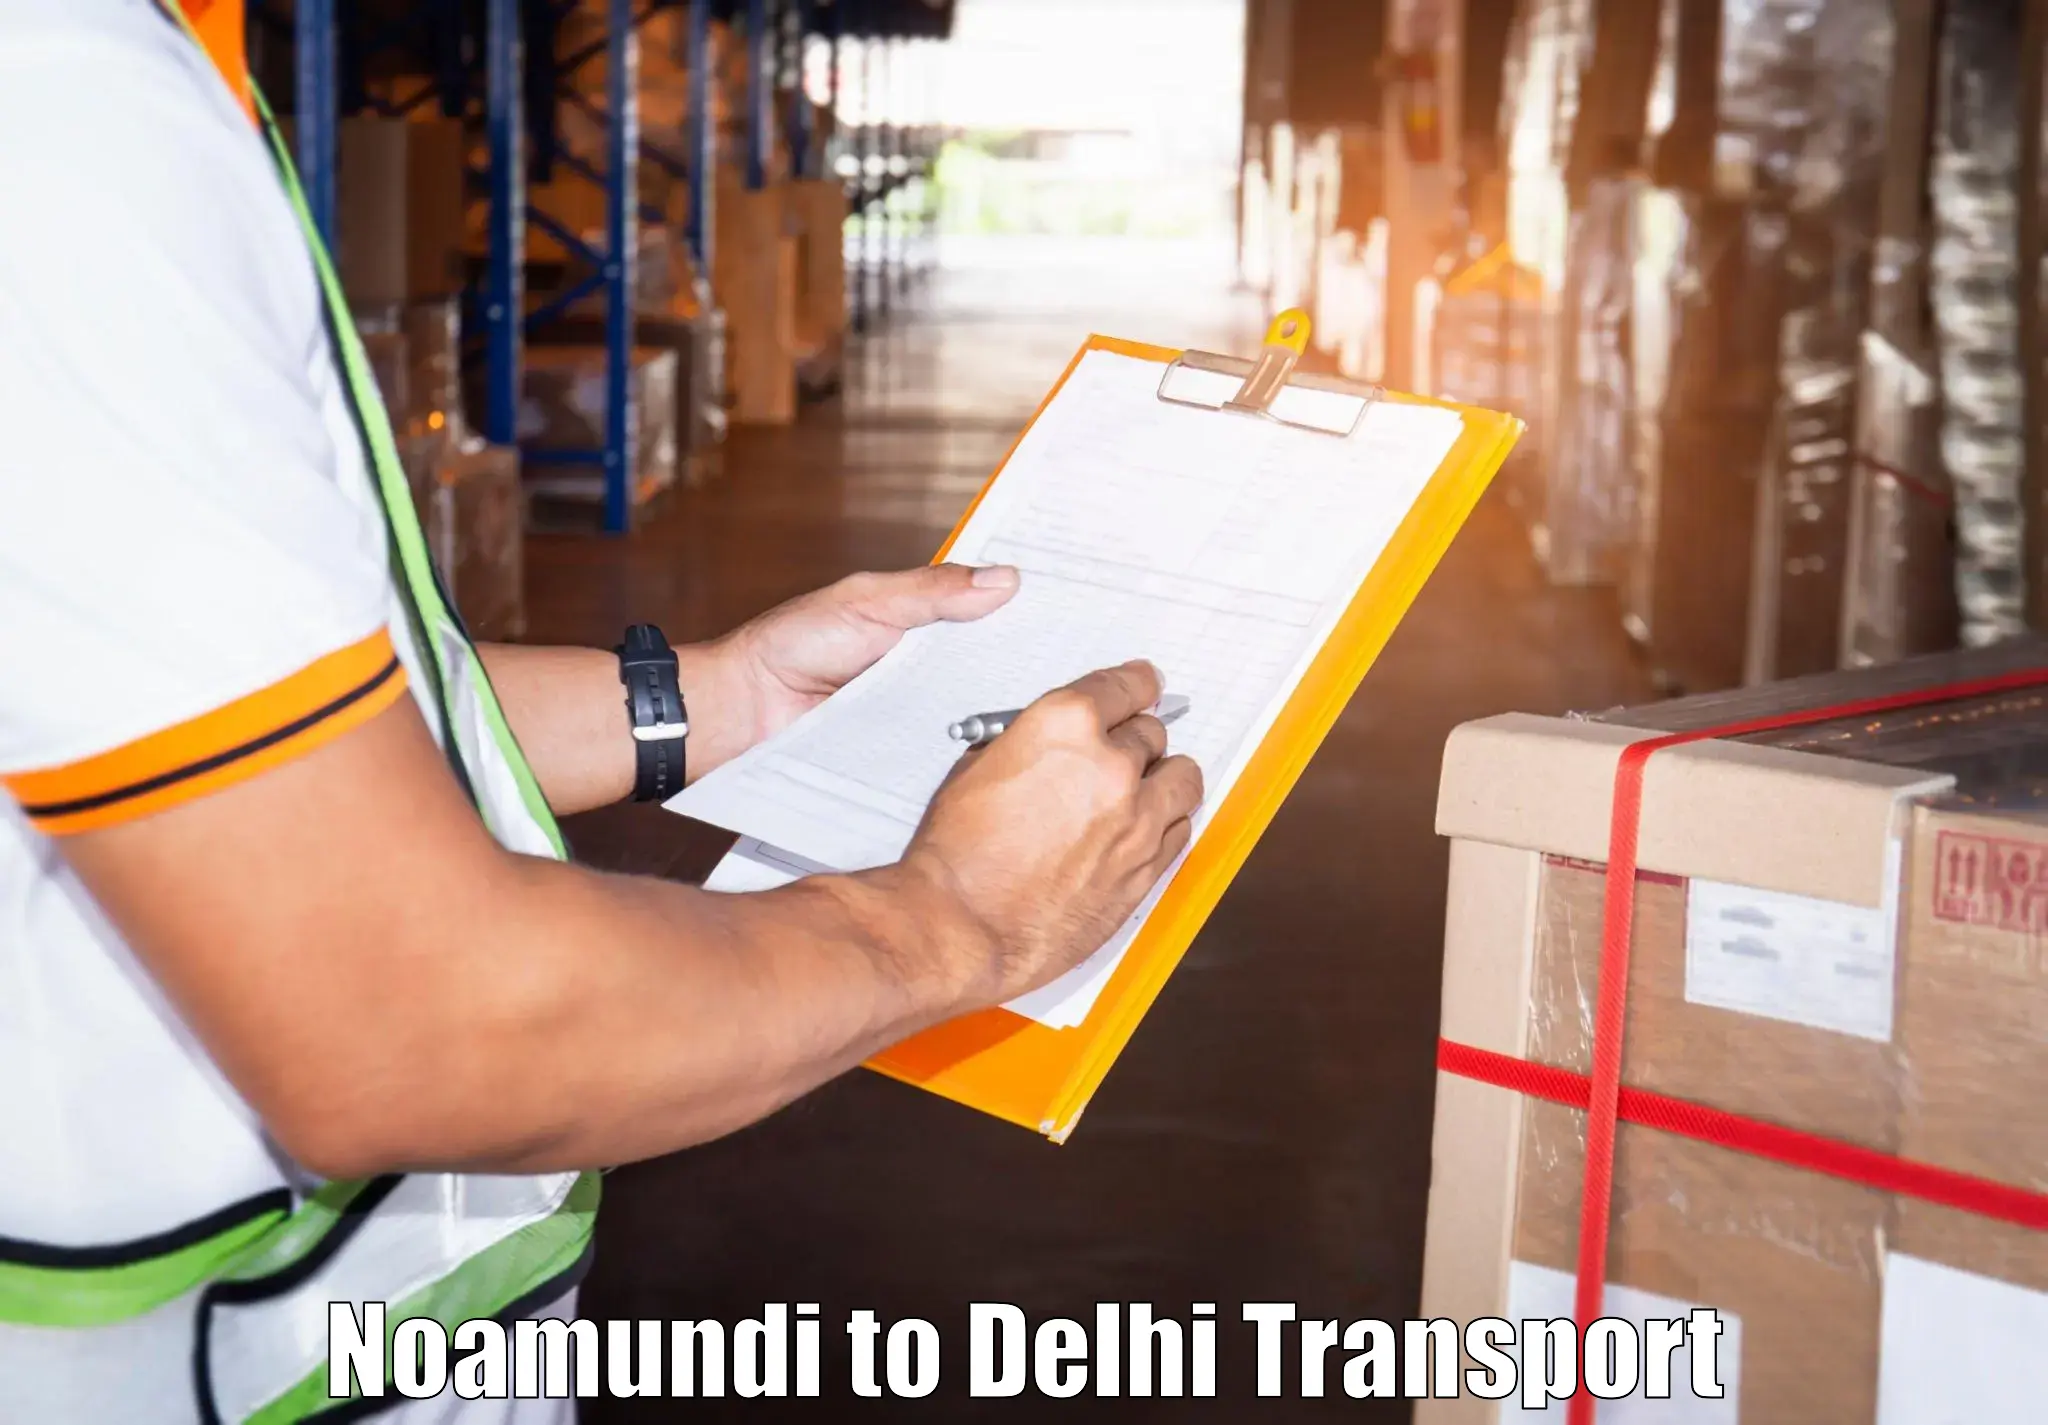 Online transport service Noamundi to University of Delhi